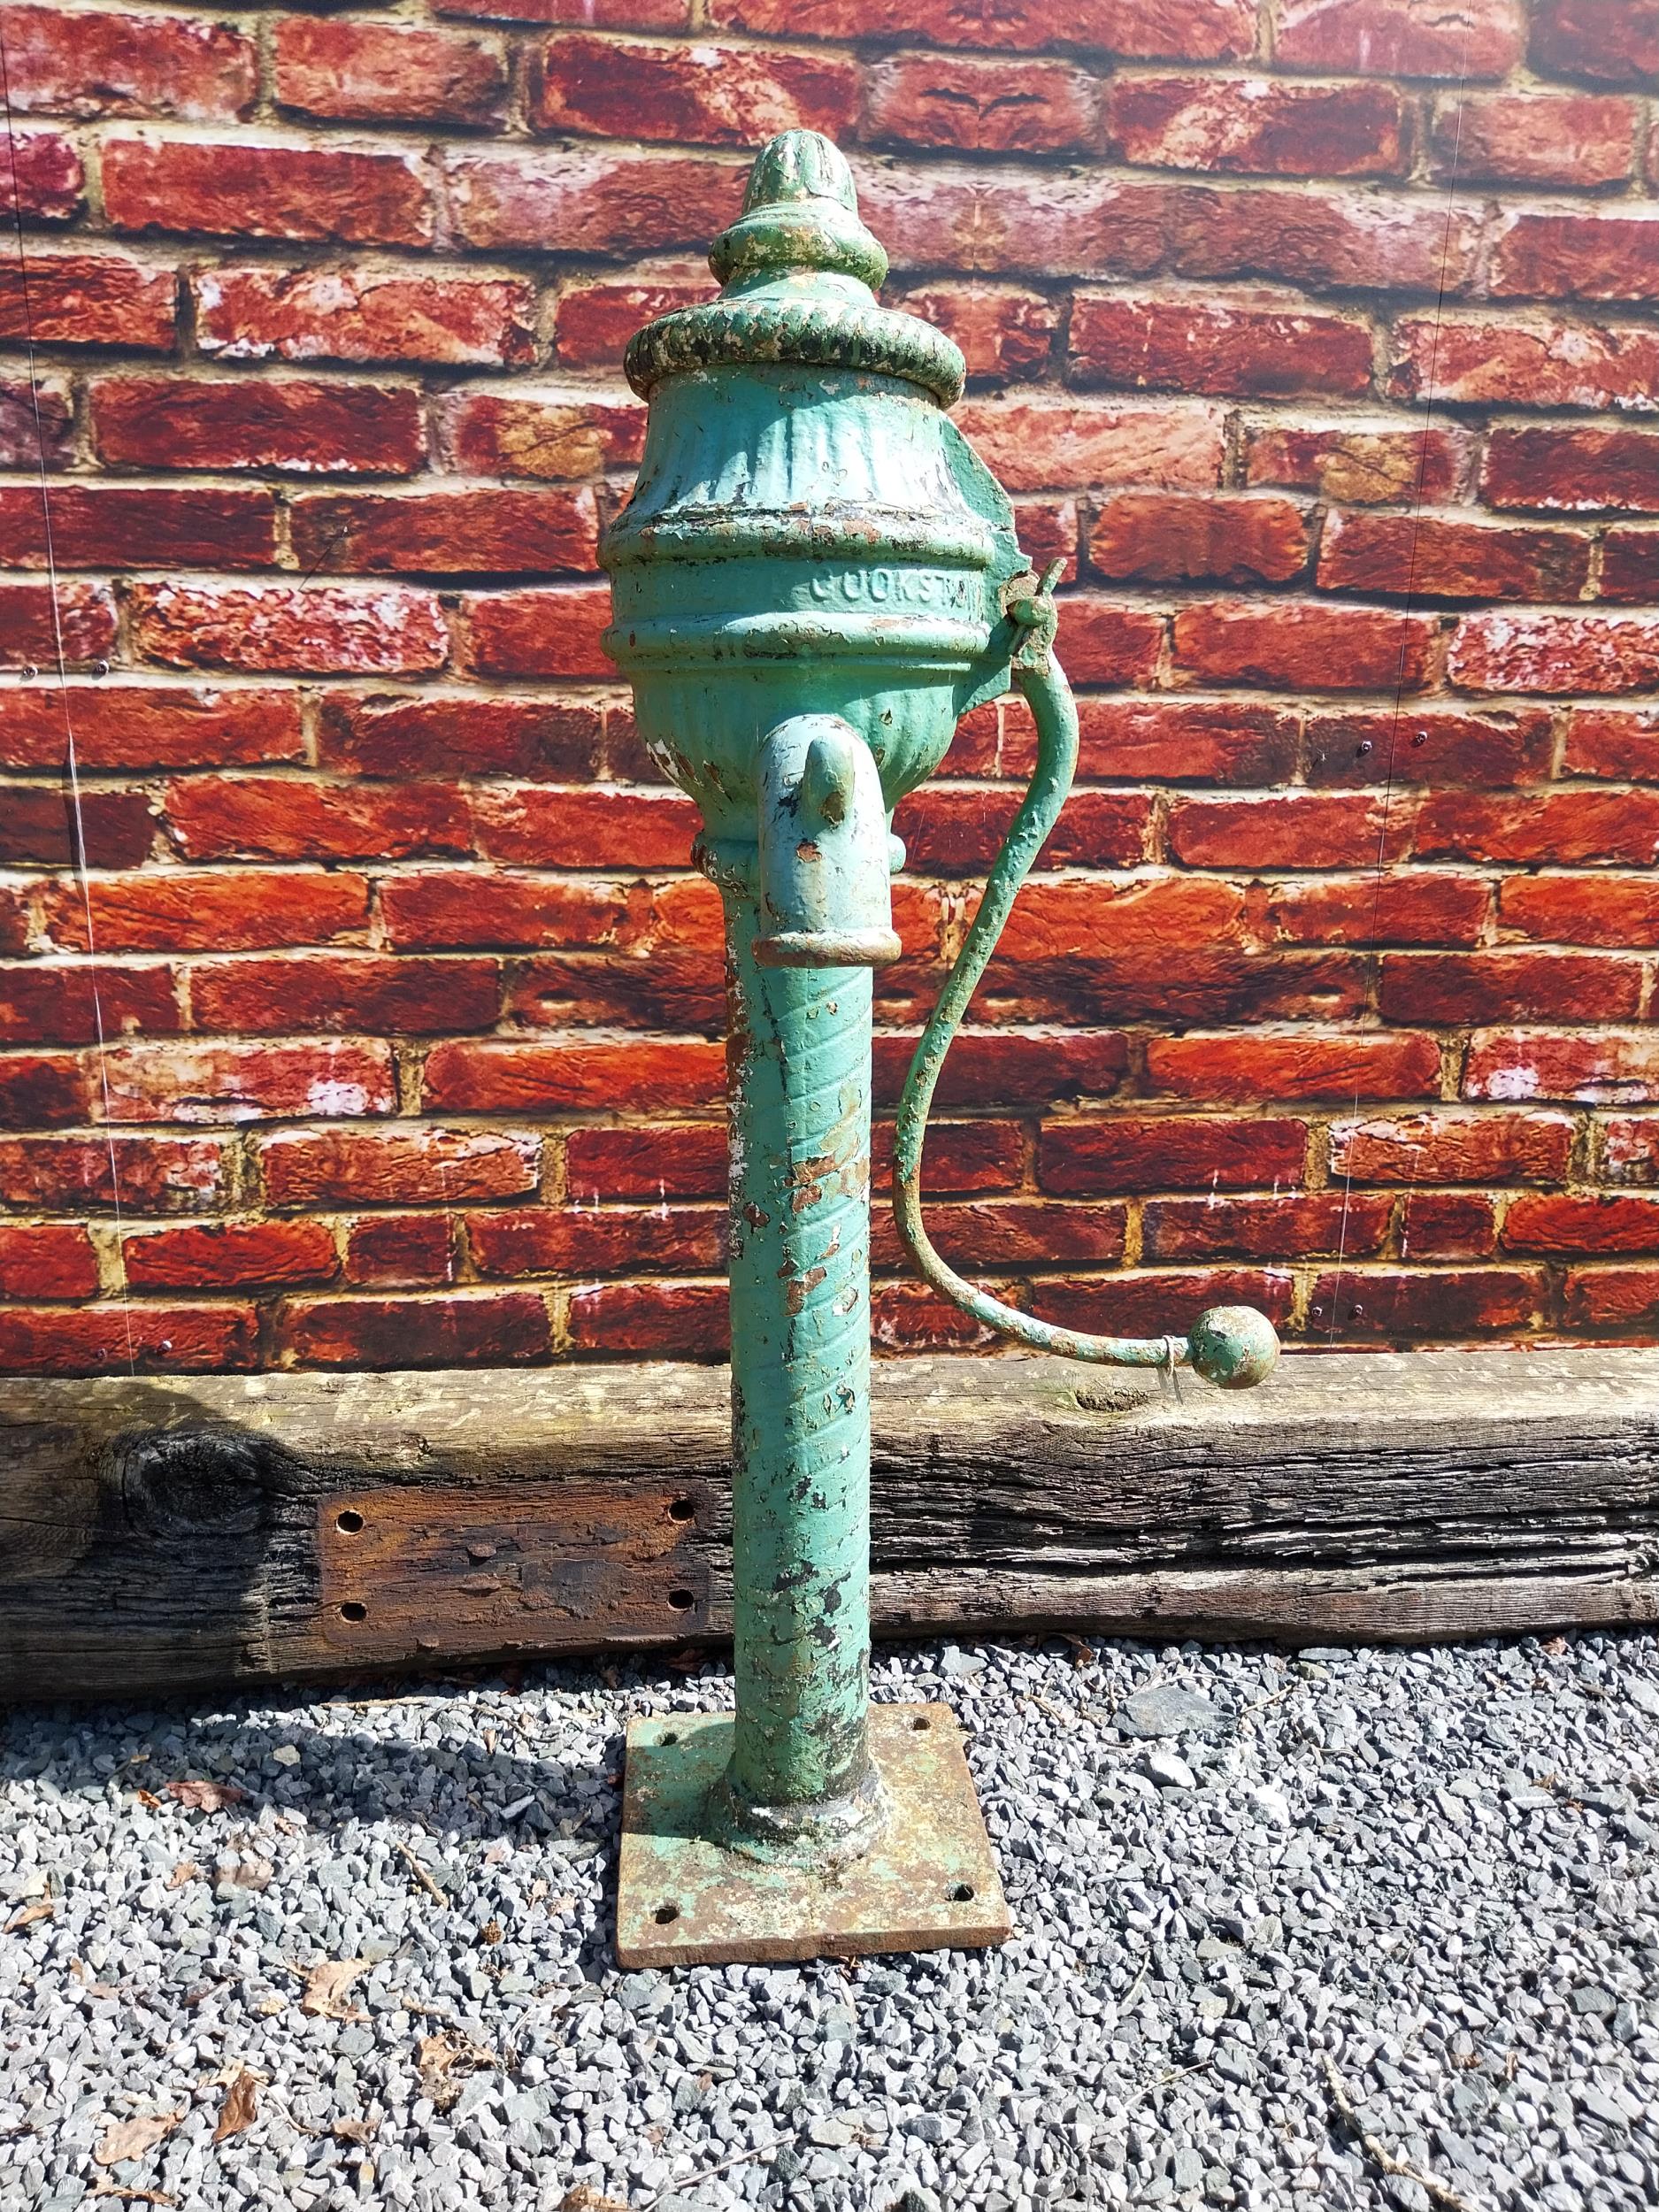 19th C. cast iron water pump - J Scotts Cookstown. {120 cm H x 60 cm W x 45 cm D}.